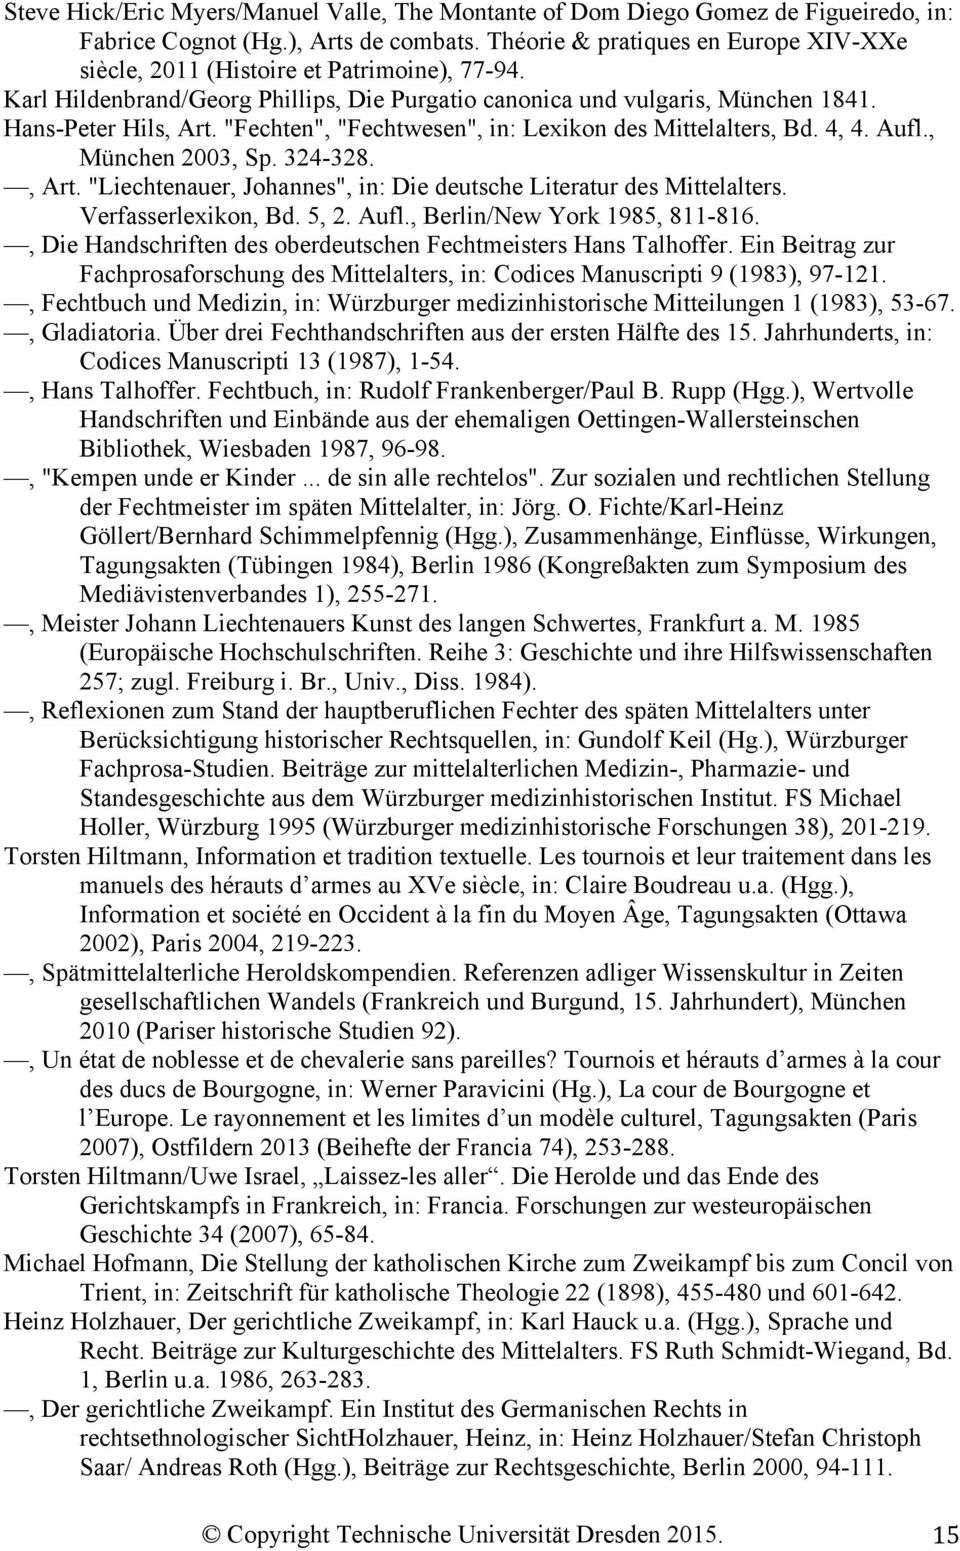 "Fechten", "Fechtwesen", in: Lexikon des Mittelalters, Bd. 4, 4. Aufl., München 2003, Sp. 324-328., Art. "Liechtenauer, Johannes", in: Die deutsche Literatur des Mittelalters. Verfasserlexikon, Bd.